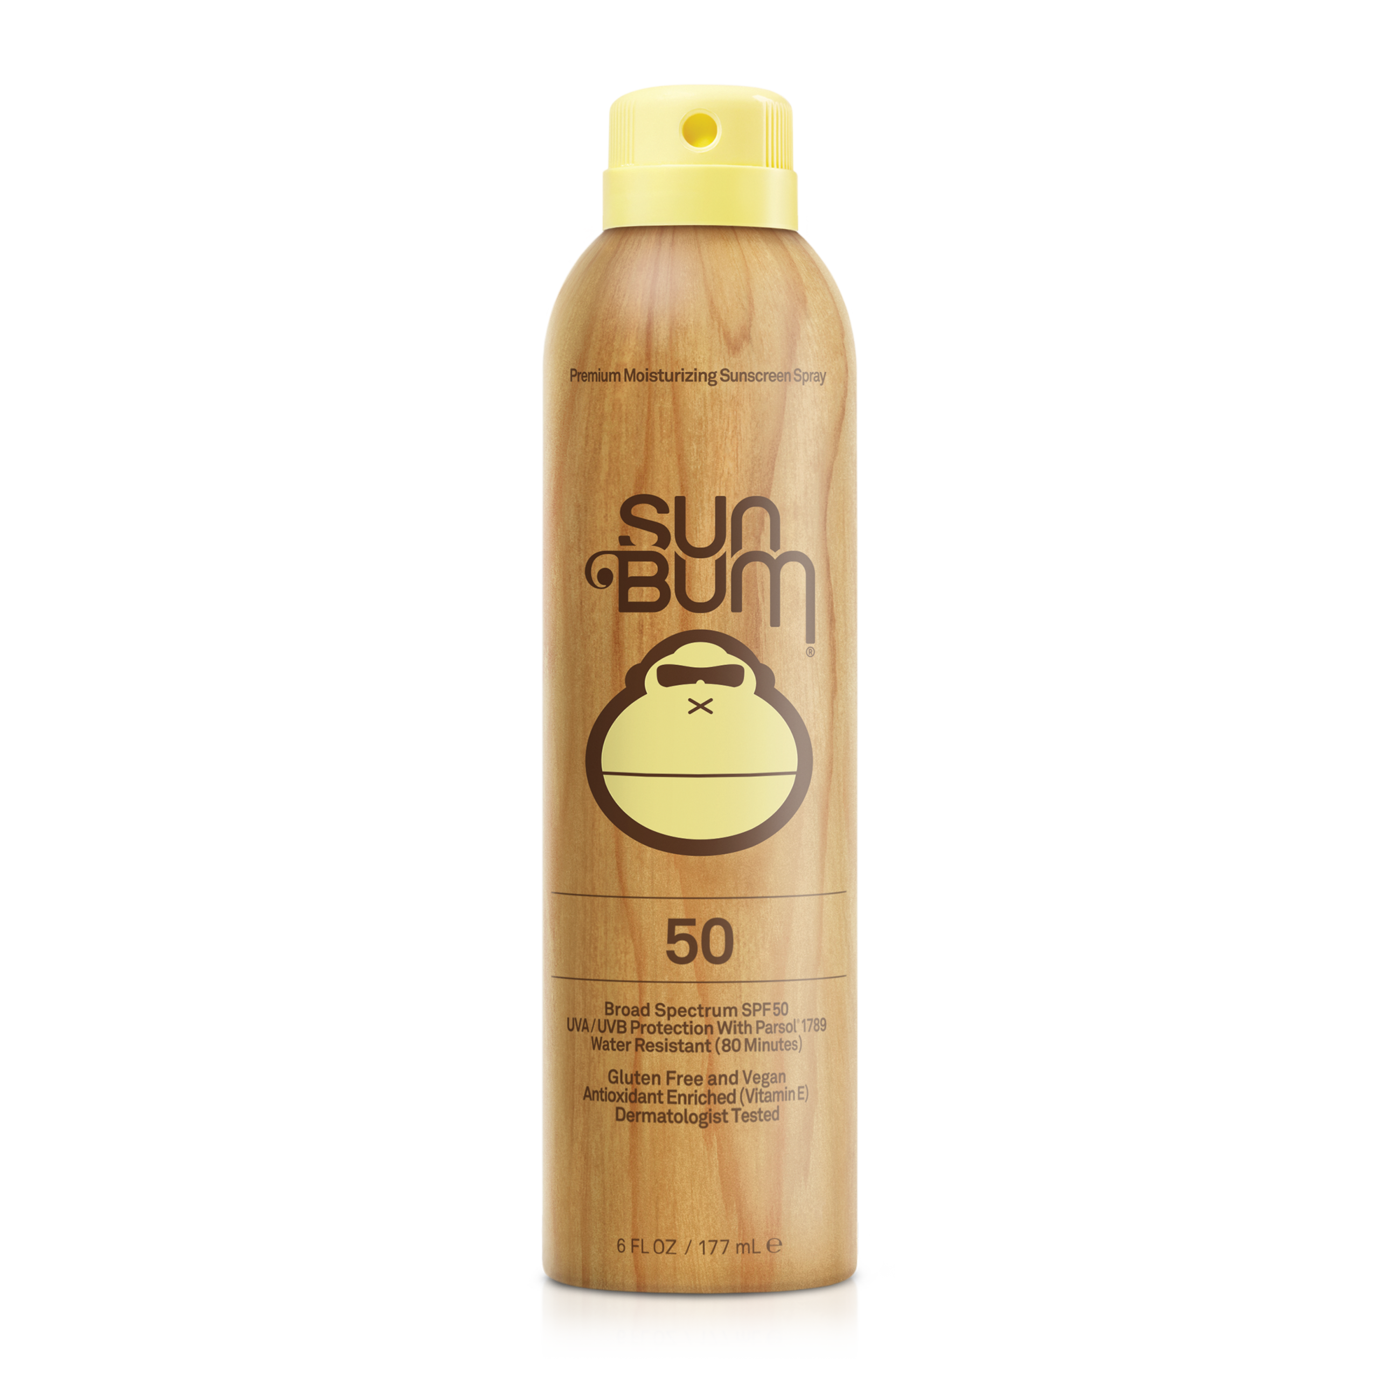 Sun Bum Sunscreen Spray 50 SPF